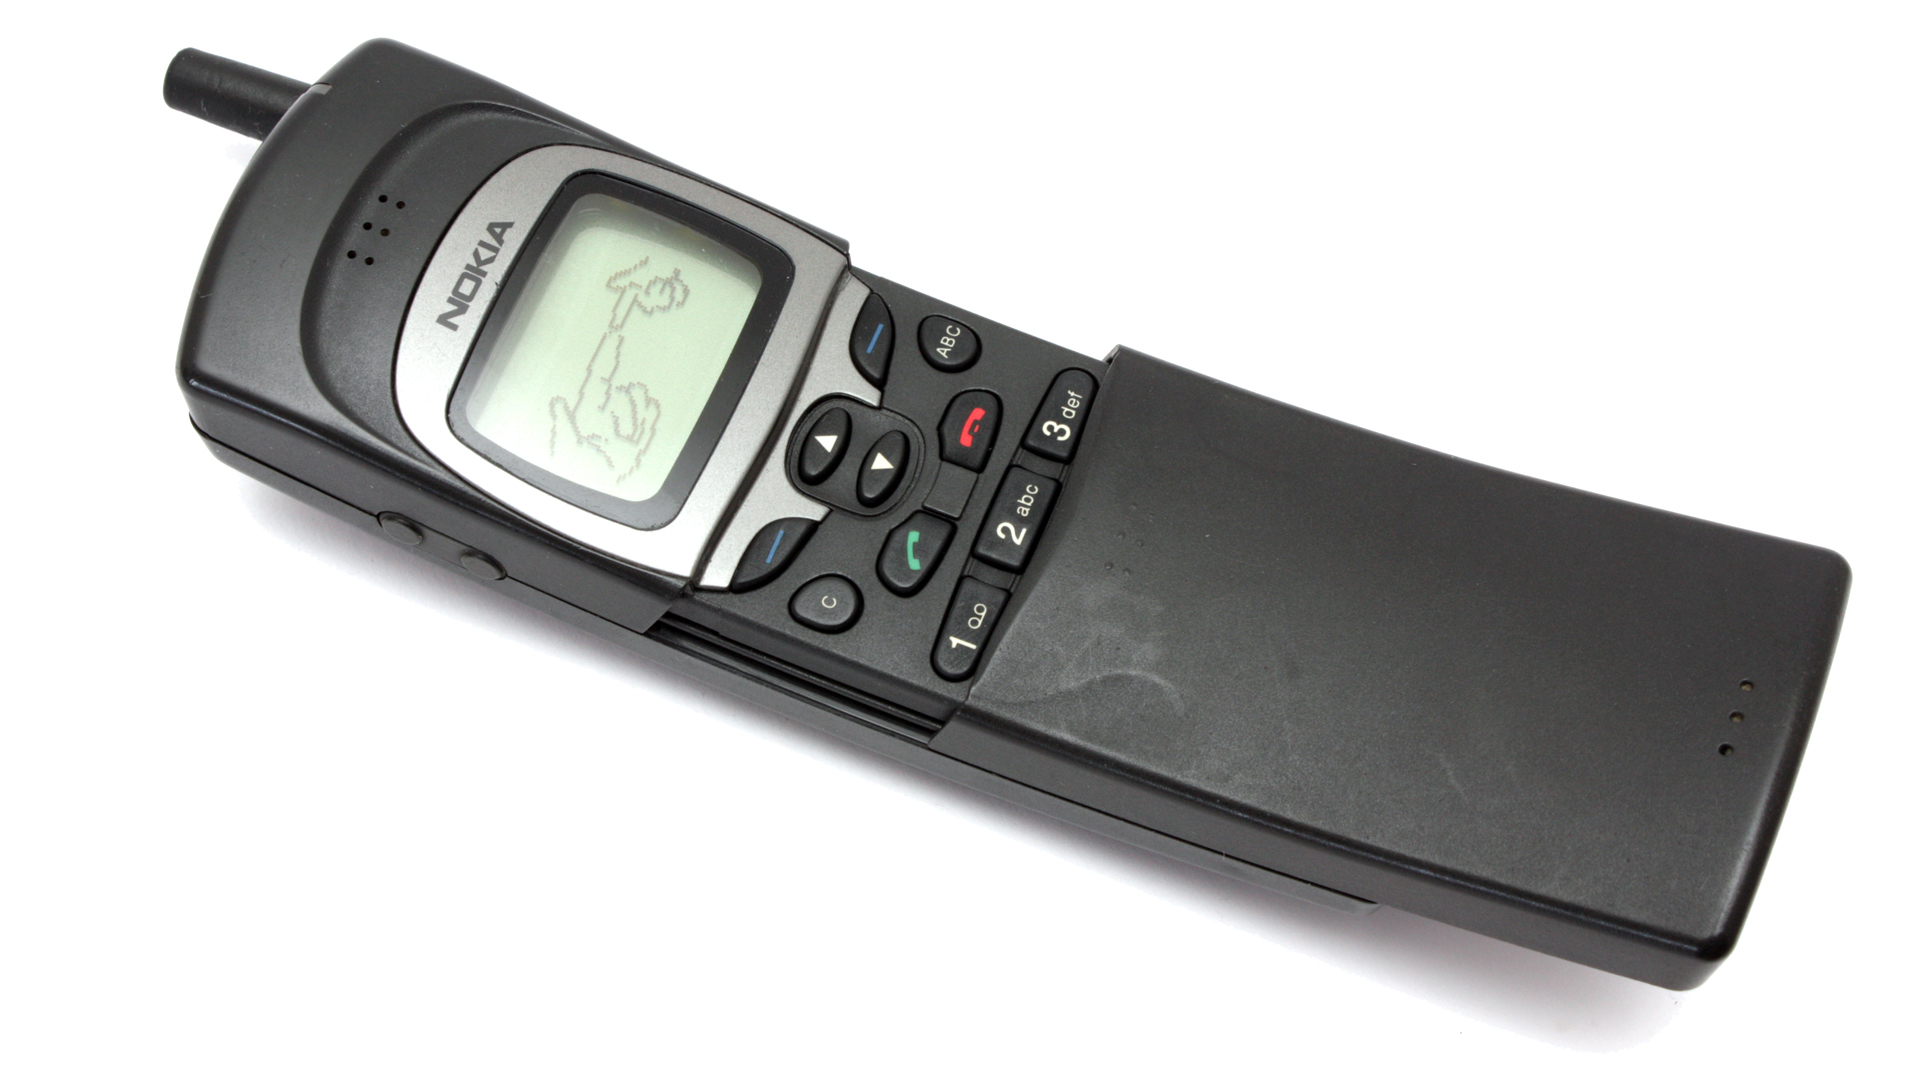 Imagens de telemóveiis antigos - Nokia 8110